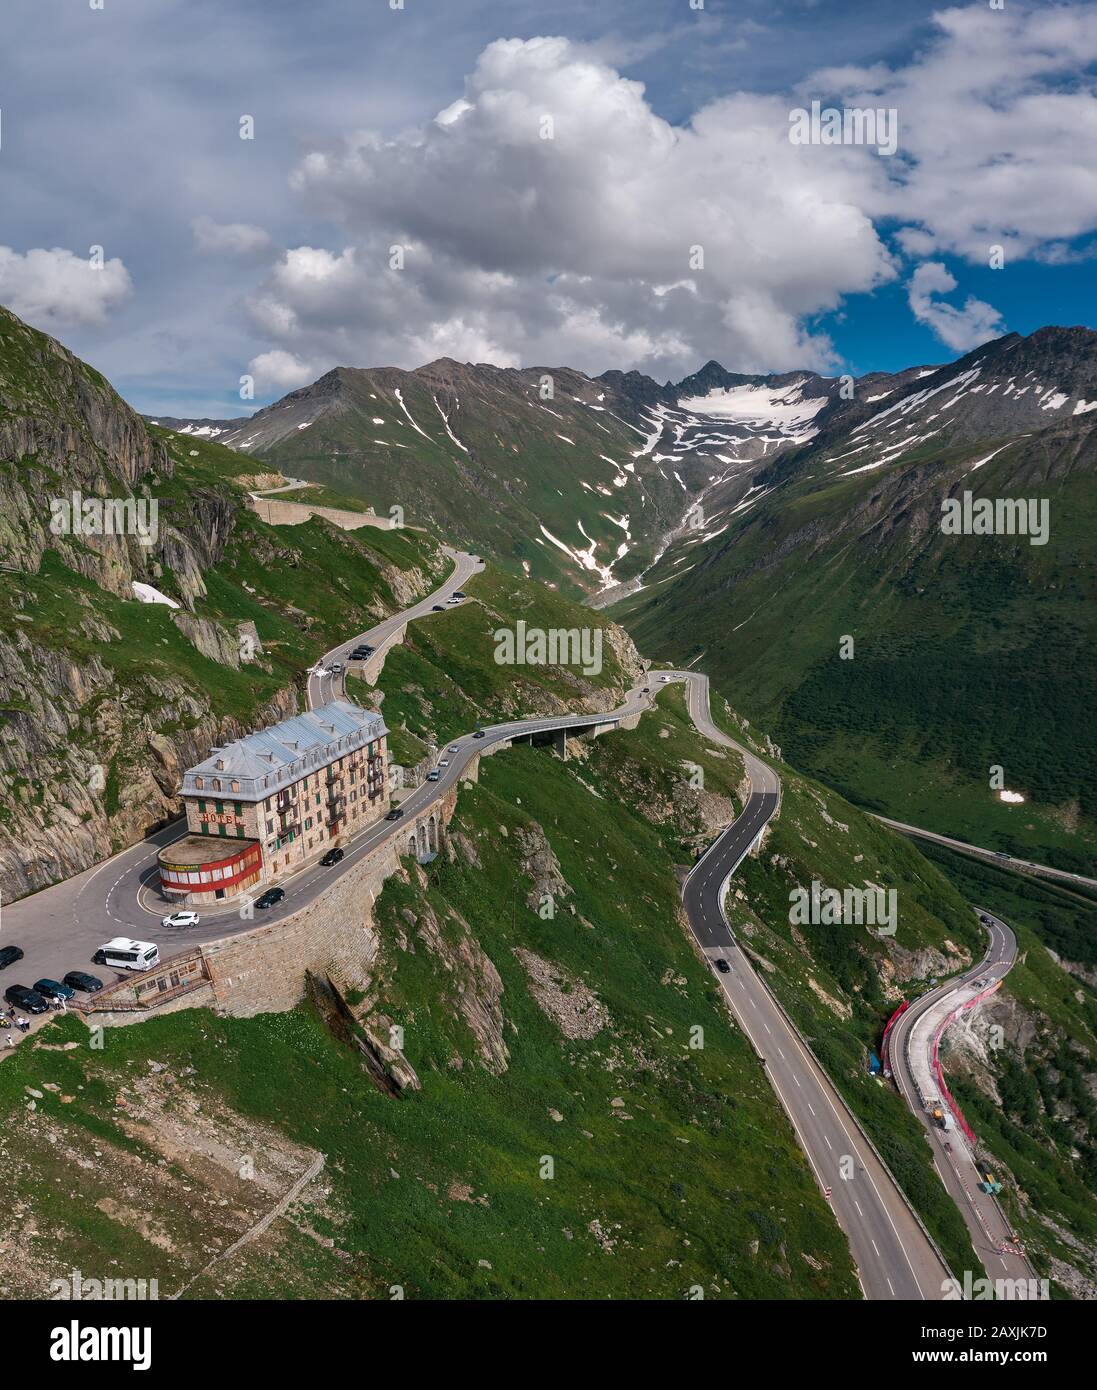 Vue aérienne de l'hôtel de montagne fermée à Belvedere Furka, Suisse Banque D'Images